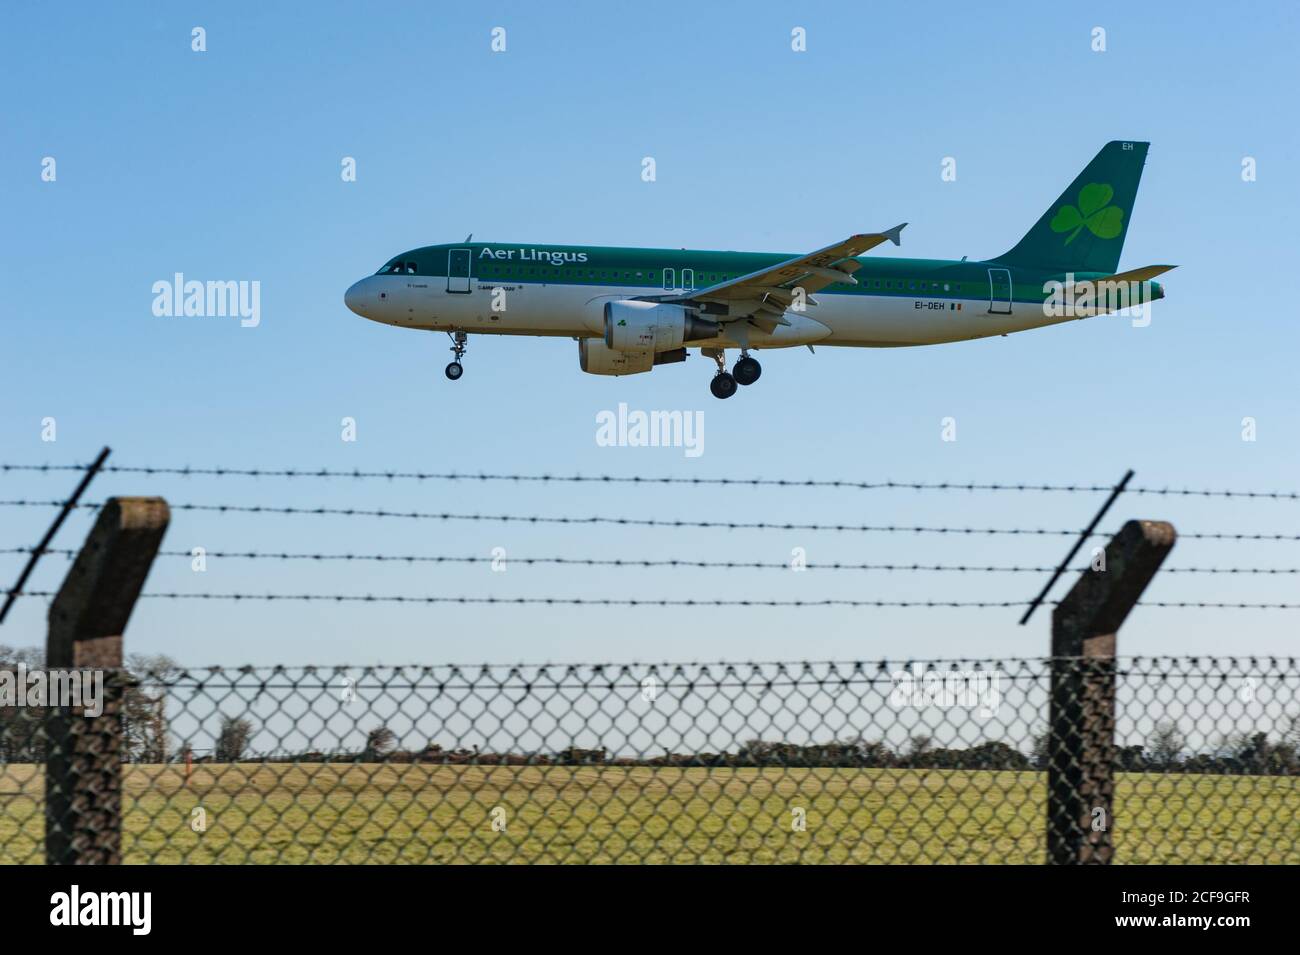 Aeropuerto de Cork, Irlanda - 26 de febrero de 2016: AER Lingus aviones de pasajeros aterrizando detrás de la barrera de seguridad del aeropuerto en el aeropuerto de Cork, Irlanda Foto de stock